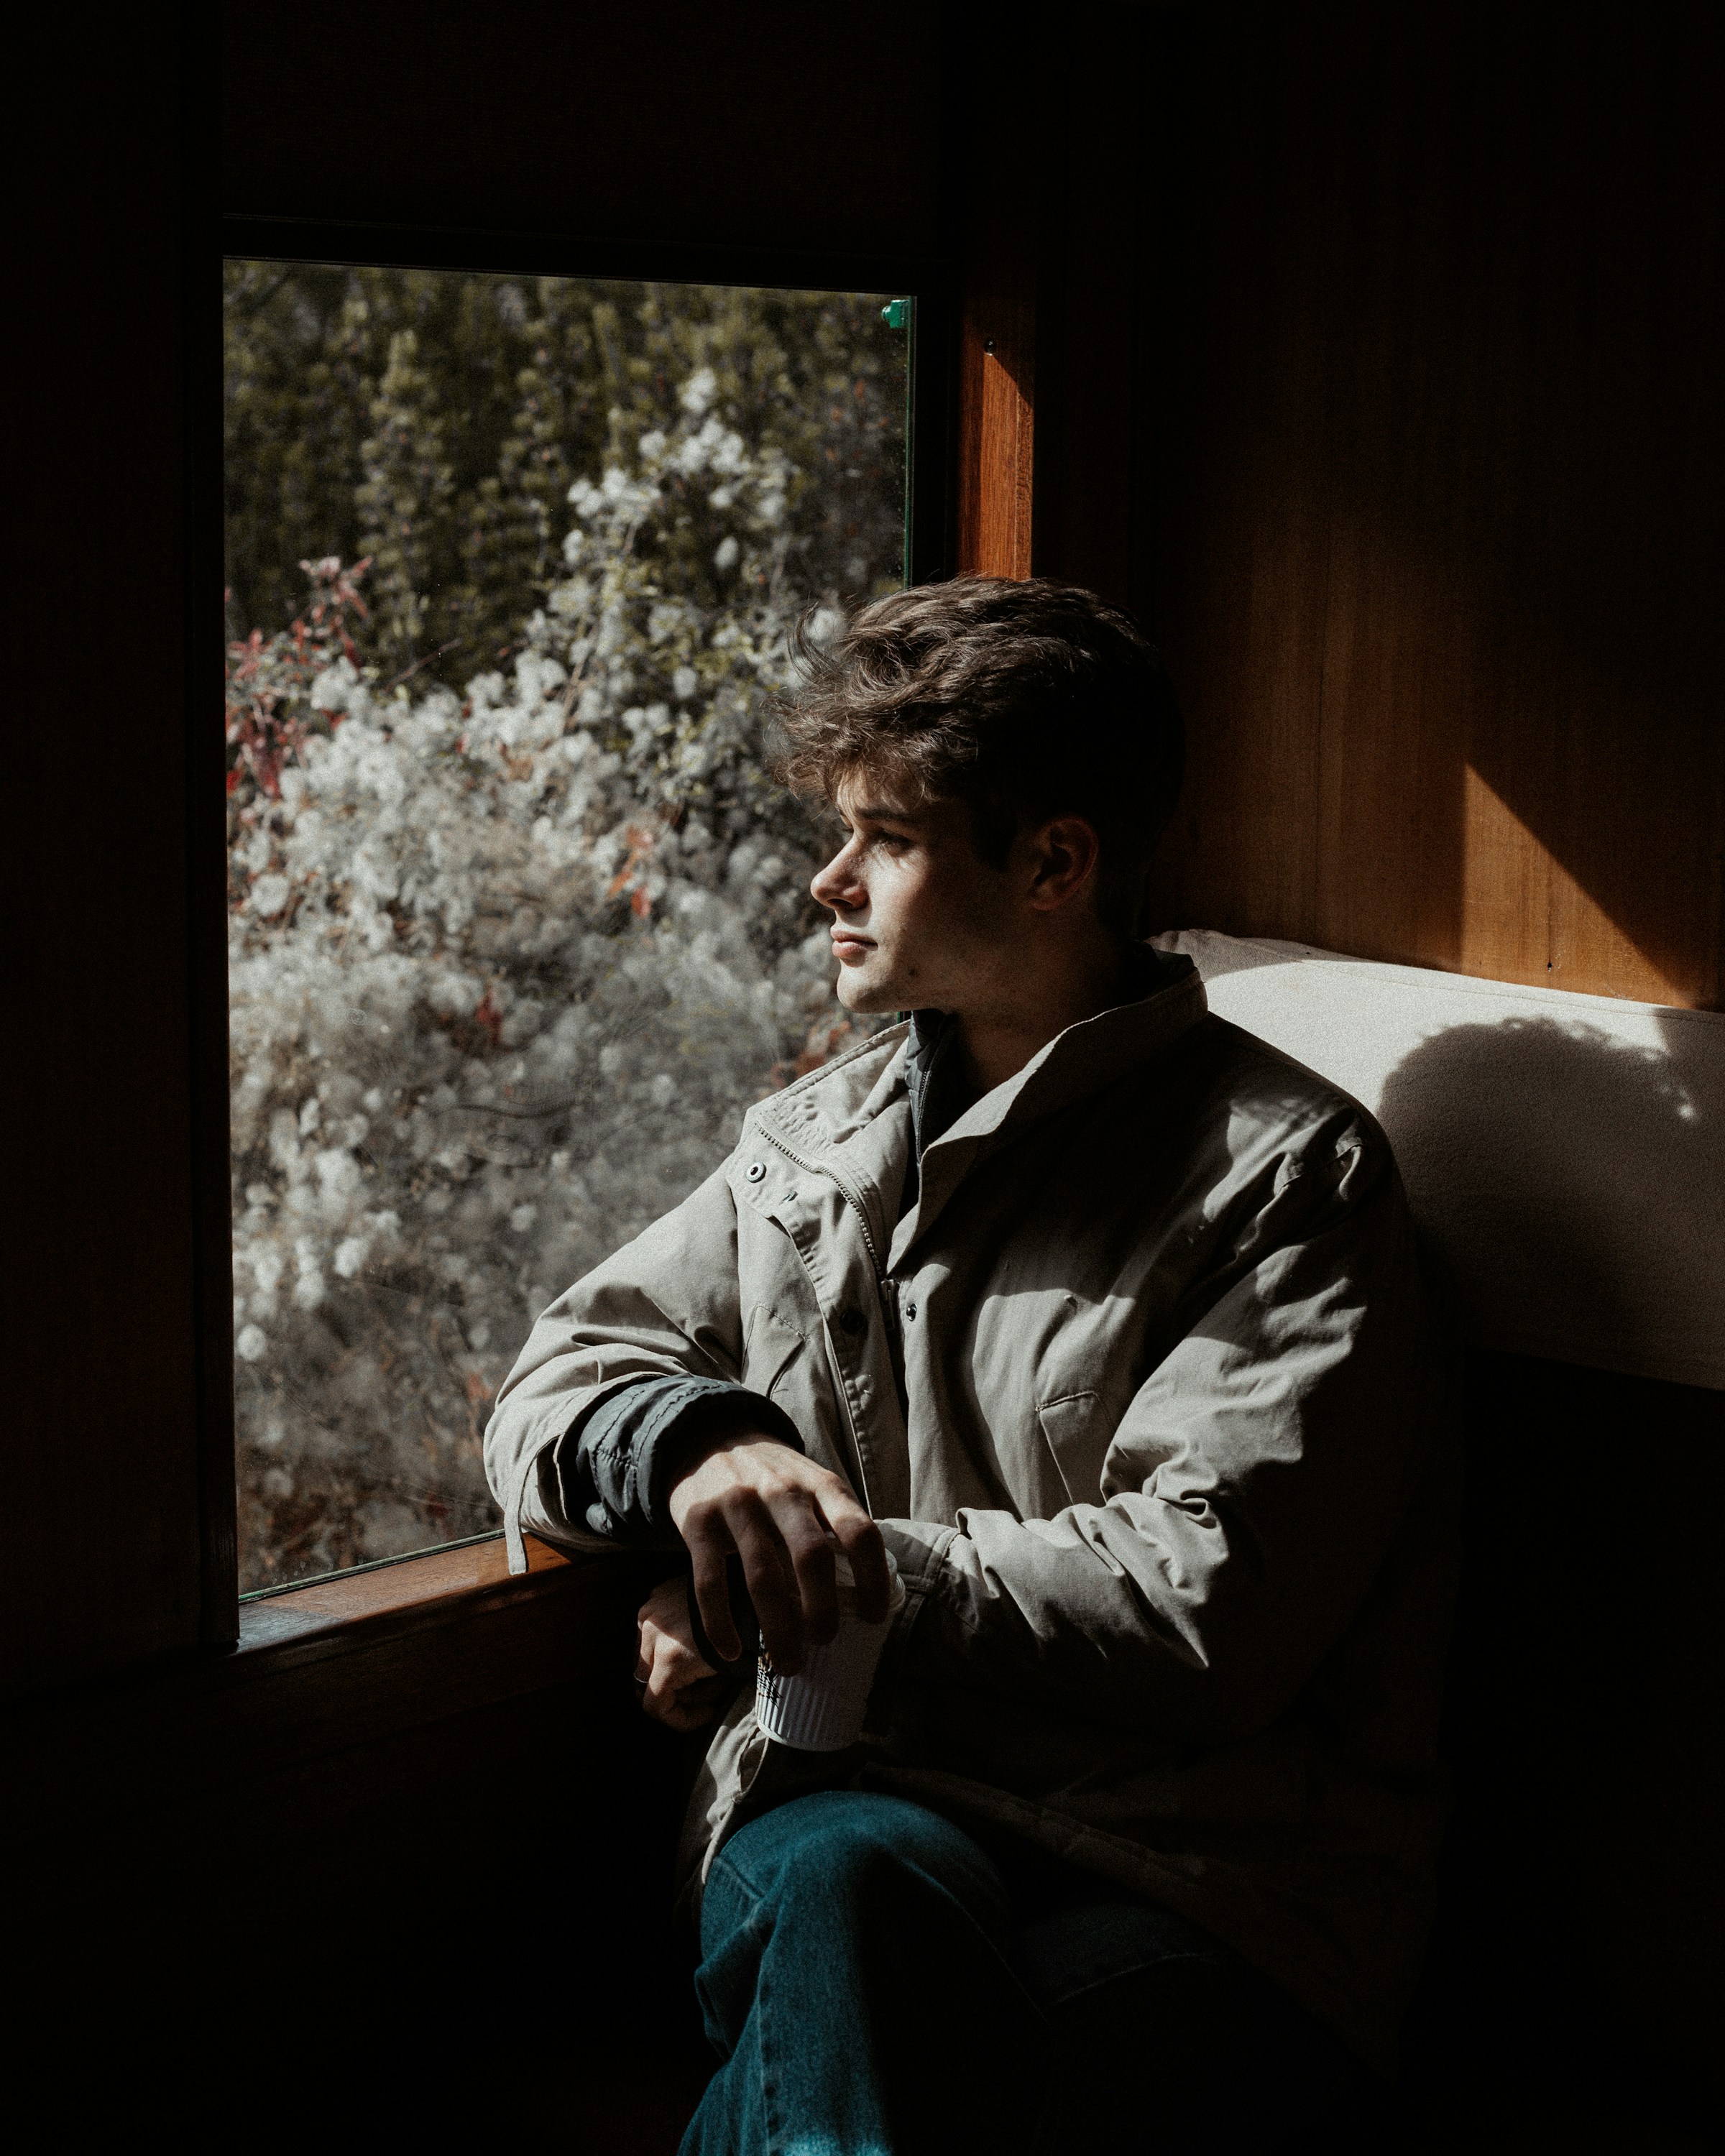 Un jeune garçon assis sur le siège de la fenêtre d'un train | Source : Unsplash